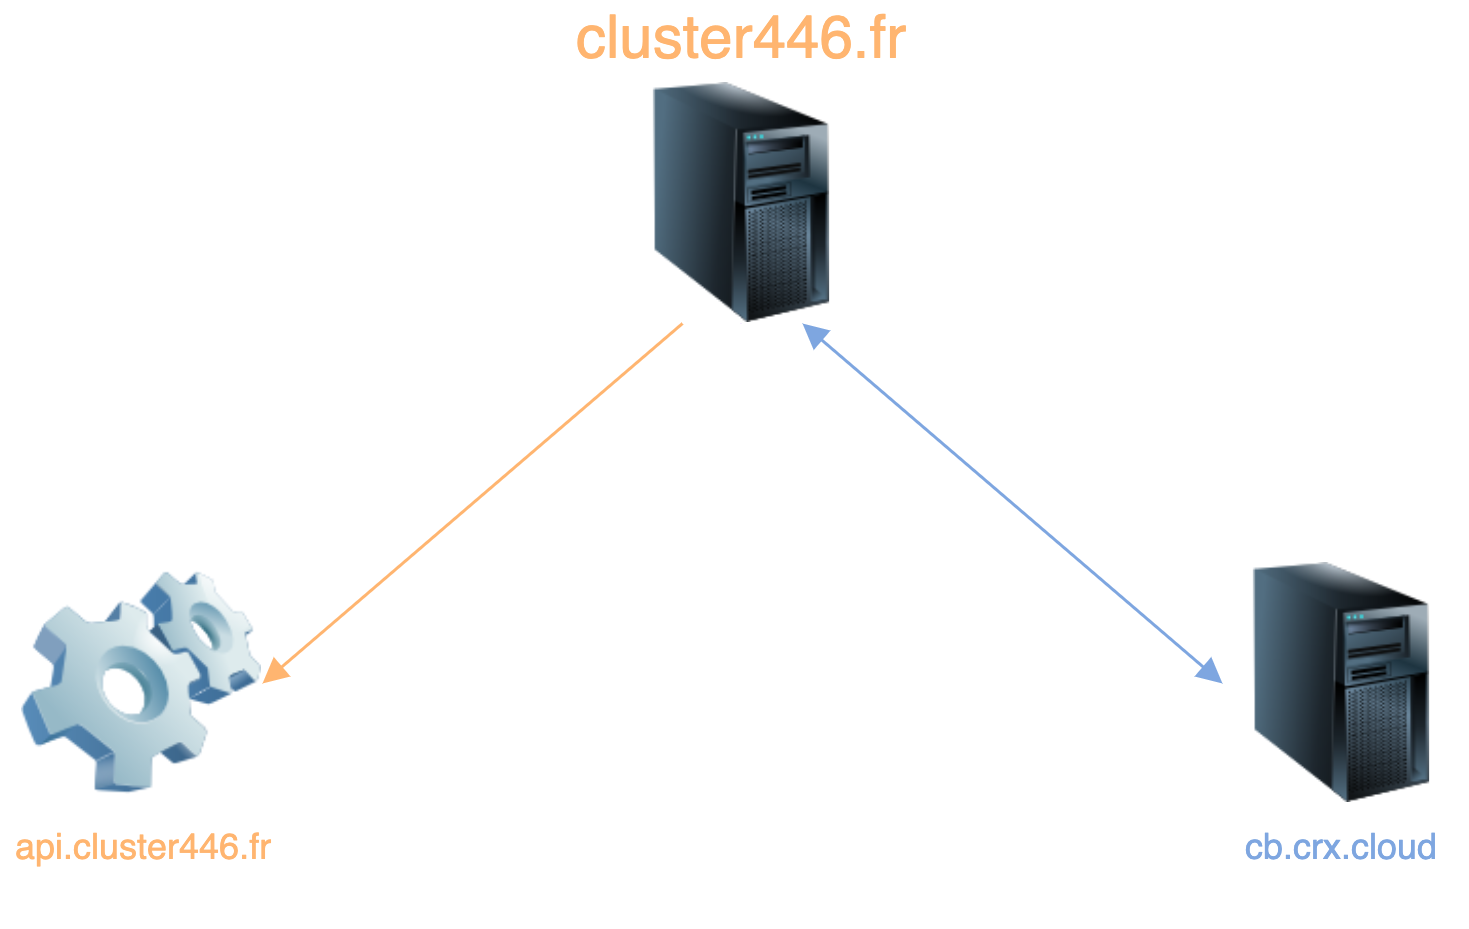 Schéma de l'architecture du Cluster446